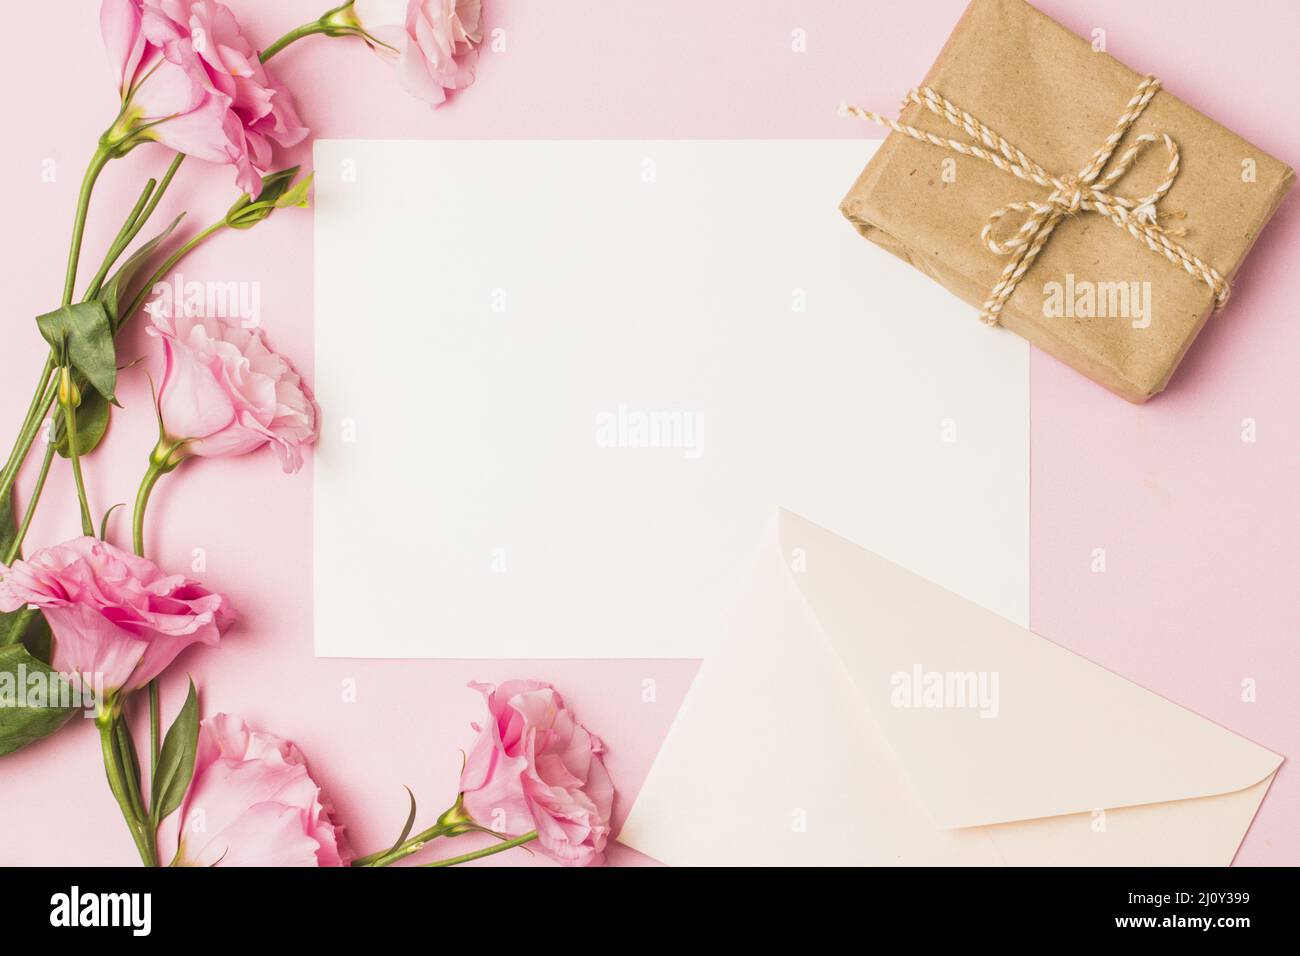 Papier vierge avec enveloppe rose frais fleur brun boîte cadeau emballage fond rose. Photo de haute qualité Banque D'Images